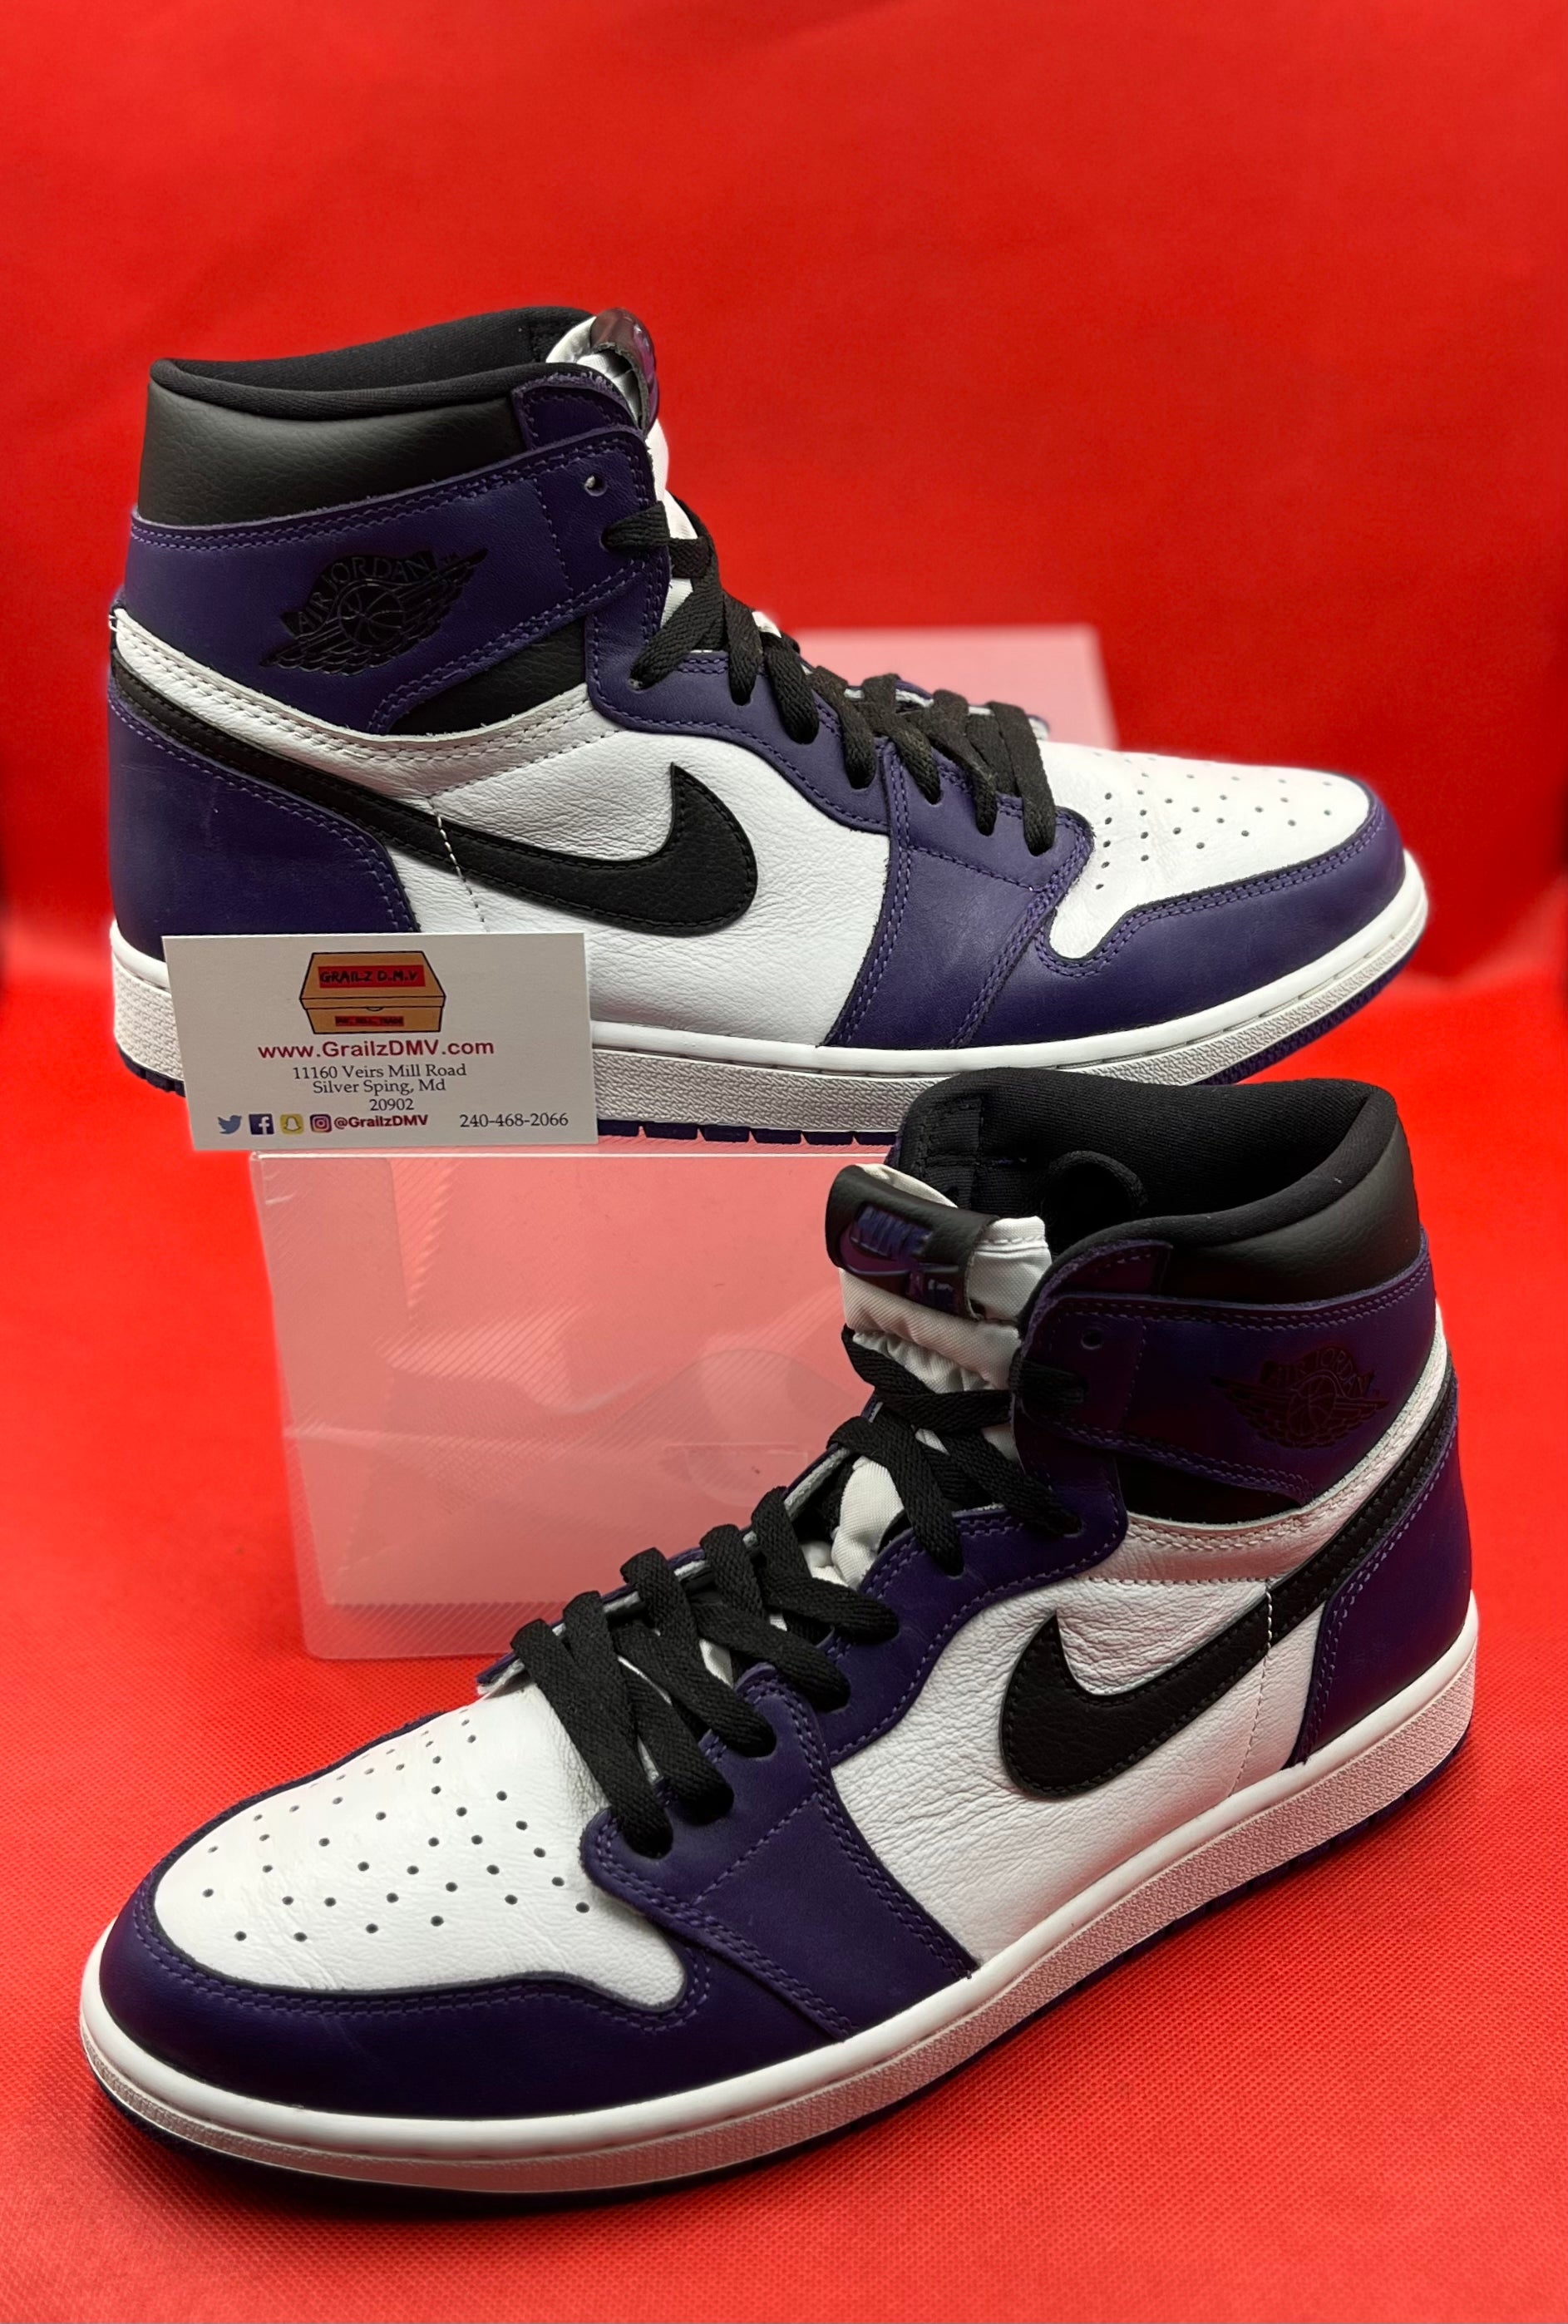 Court Purple 2.0 1s Size 12